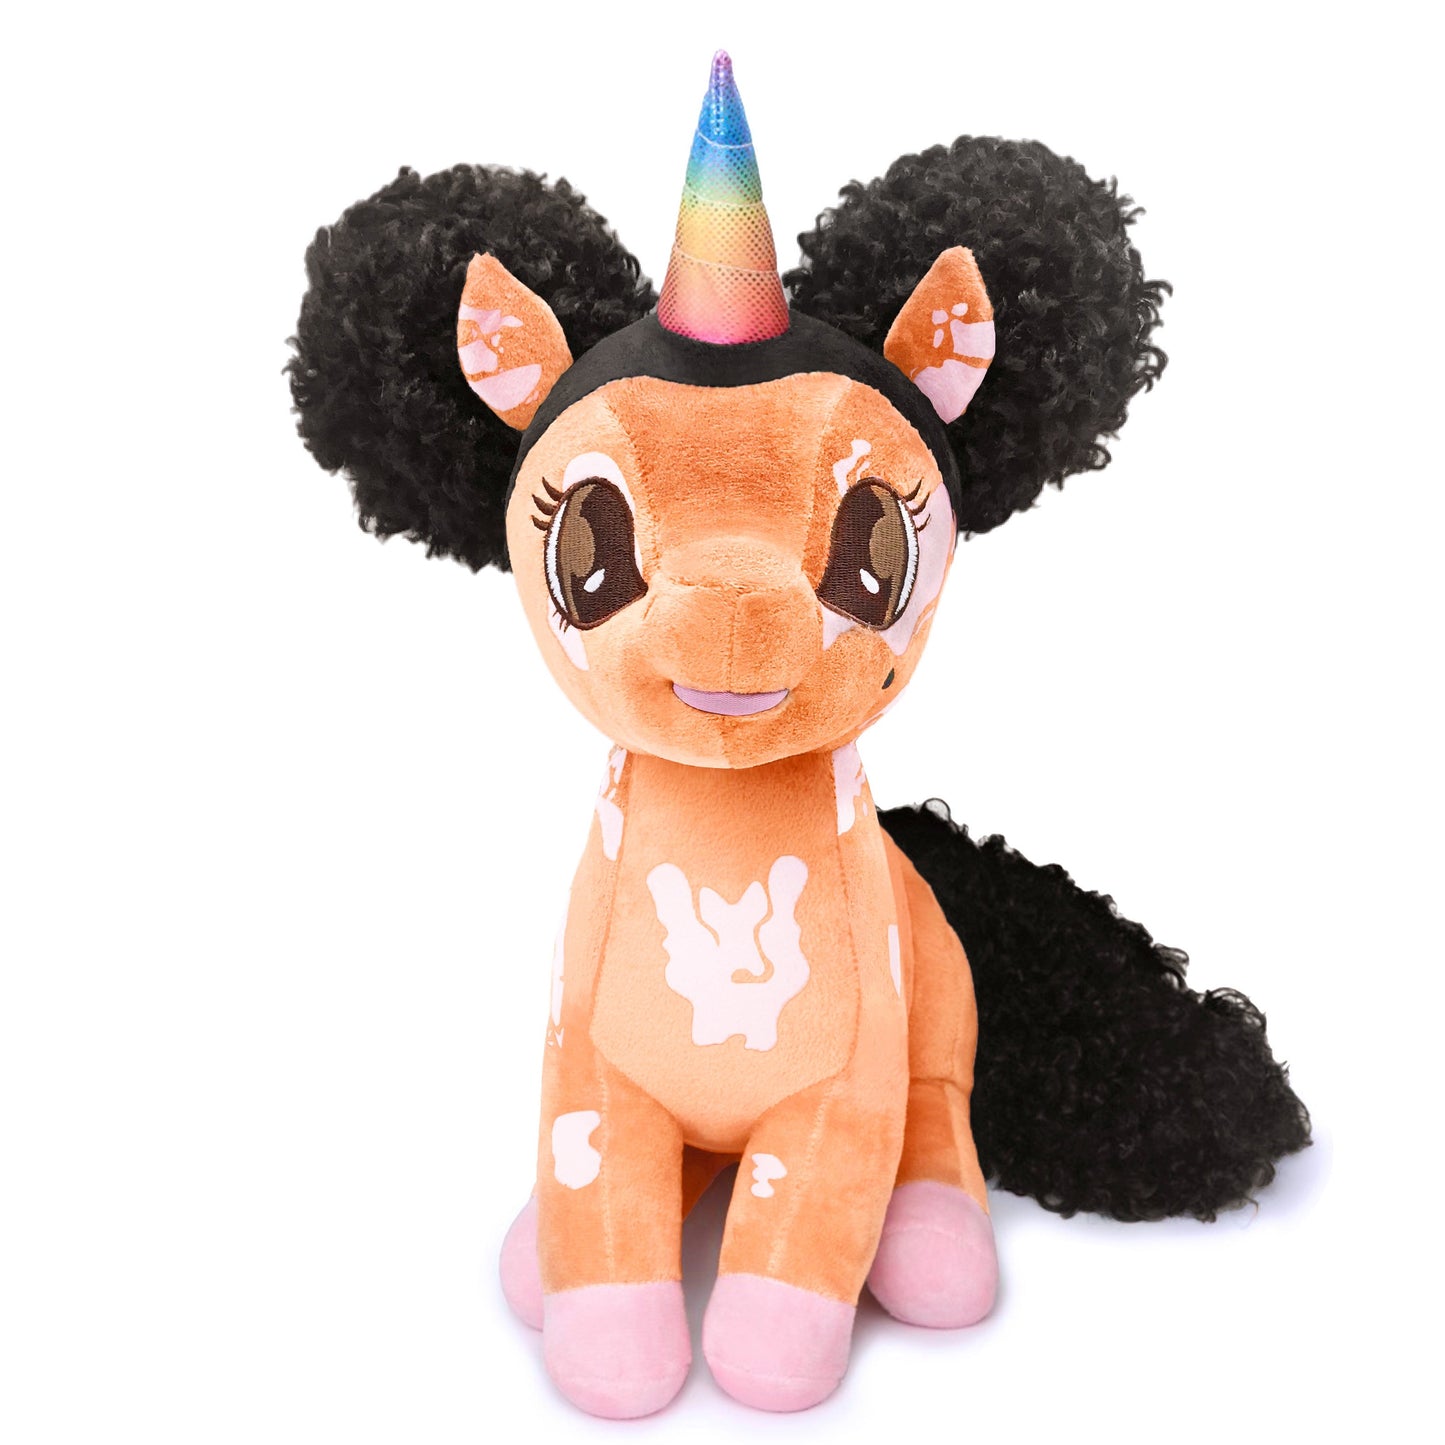 Brooklyn Unicorn with Vitiligo Plush Toy - 15 inch